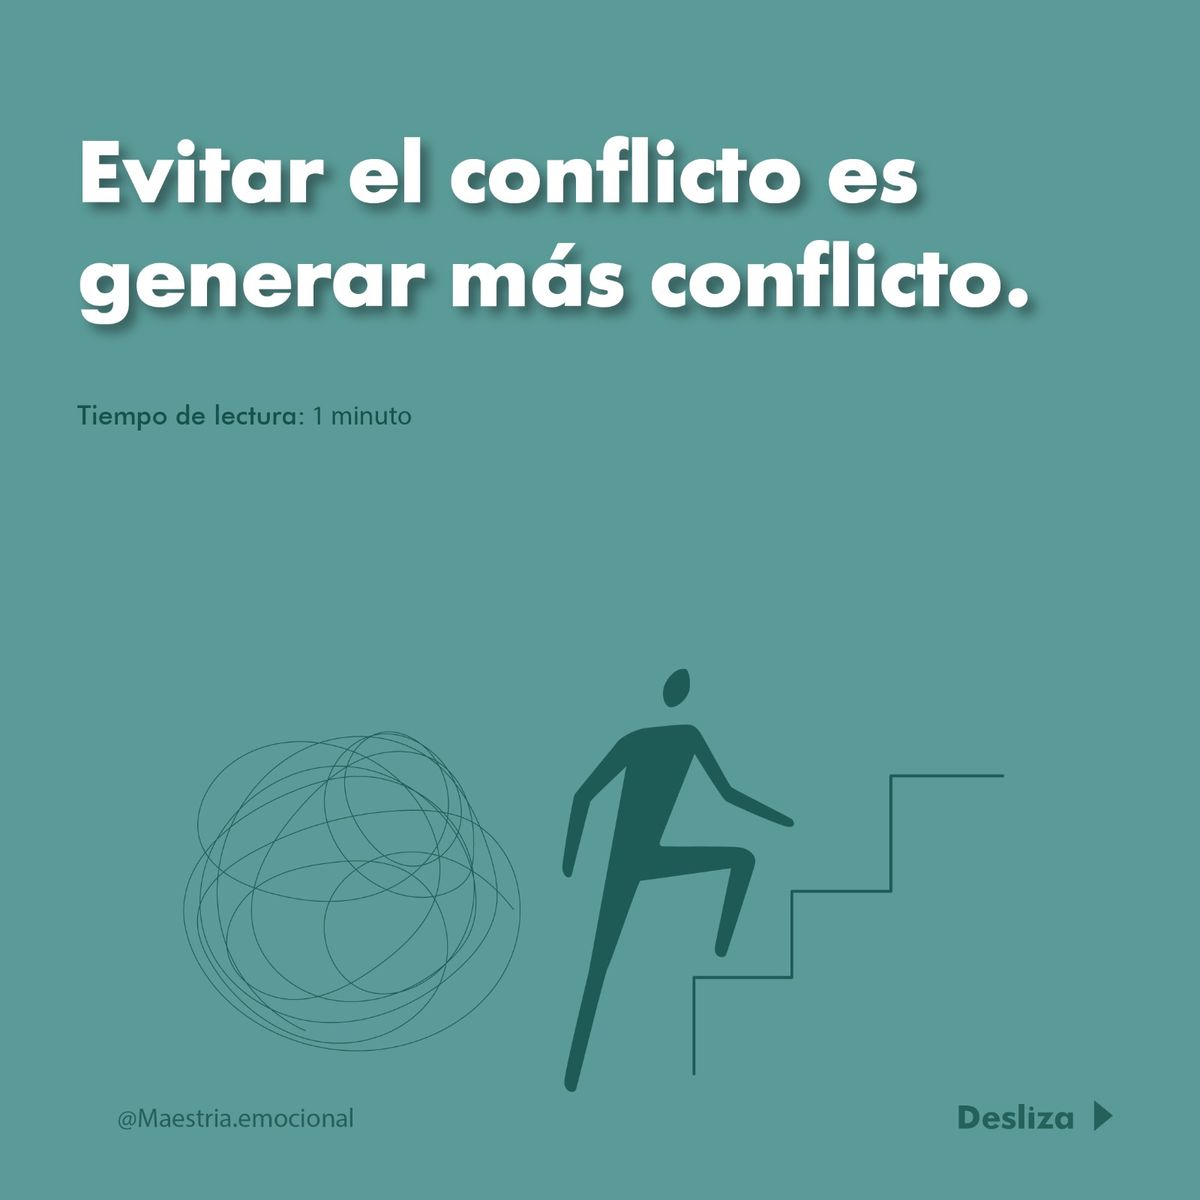 Evitar el conflicto es generar más conflicto.